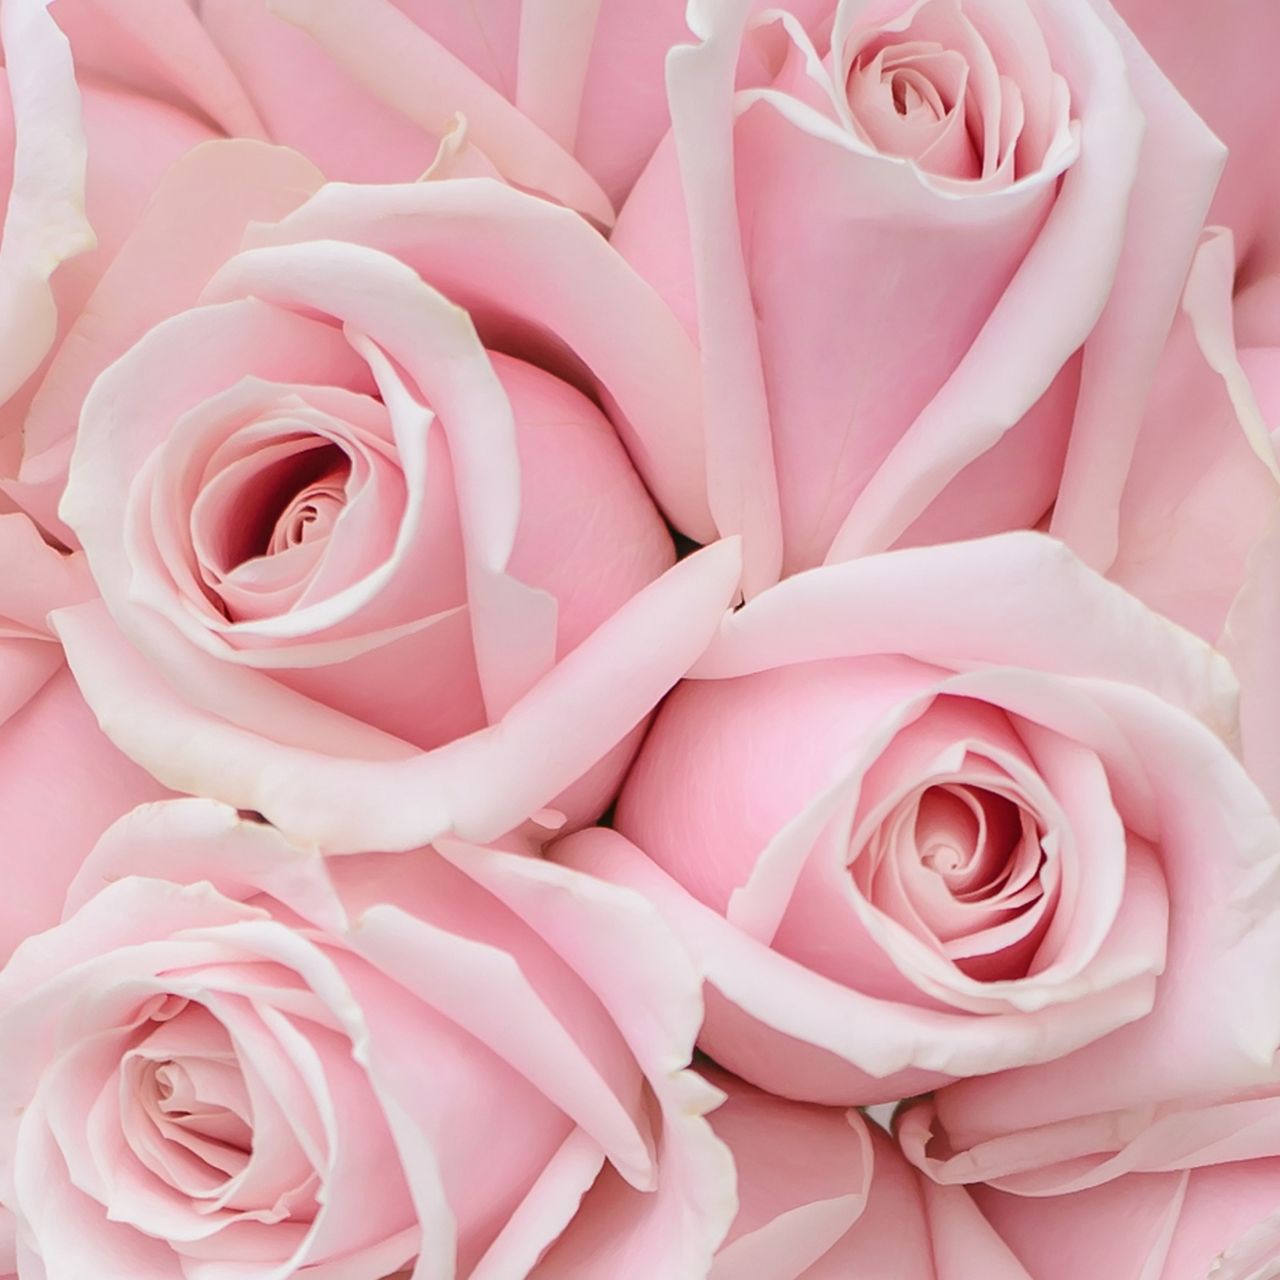 Pink Velvet Macchiato - The Hint of Rosemary